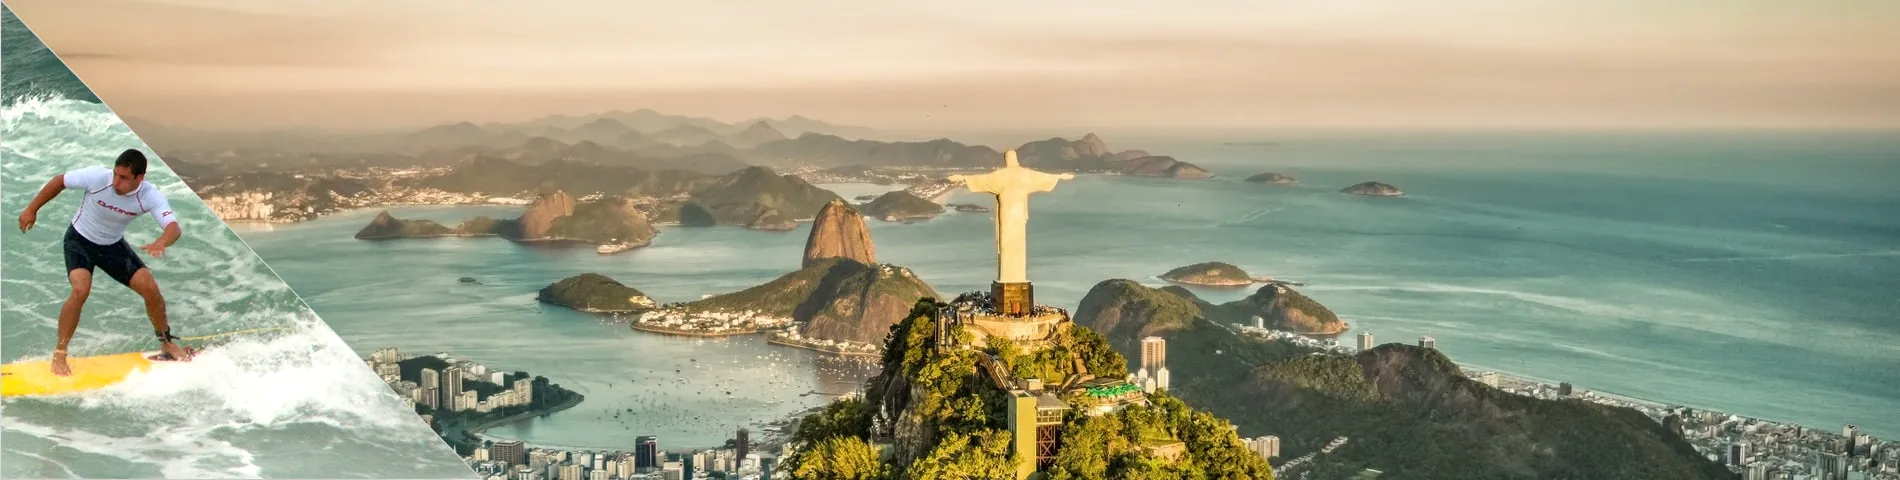 Rio de Janeiro - Portugalski & Surfowanie 